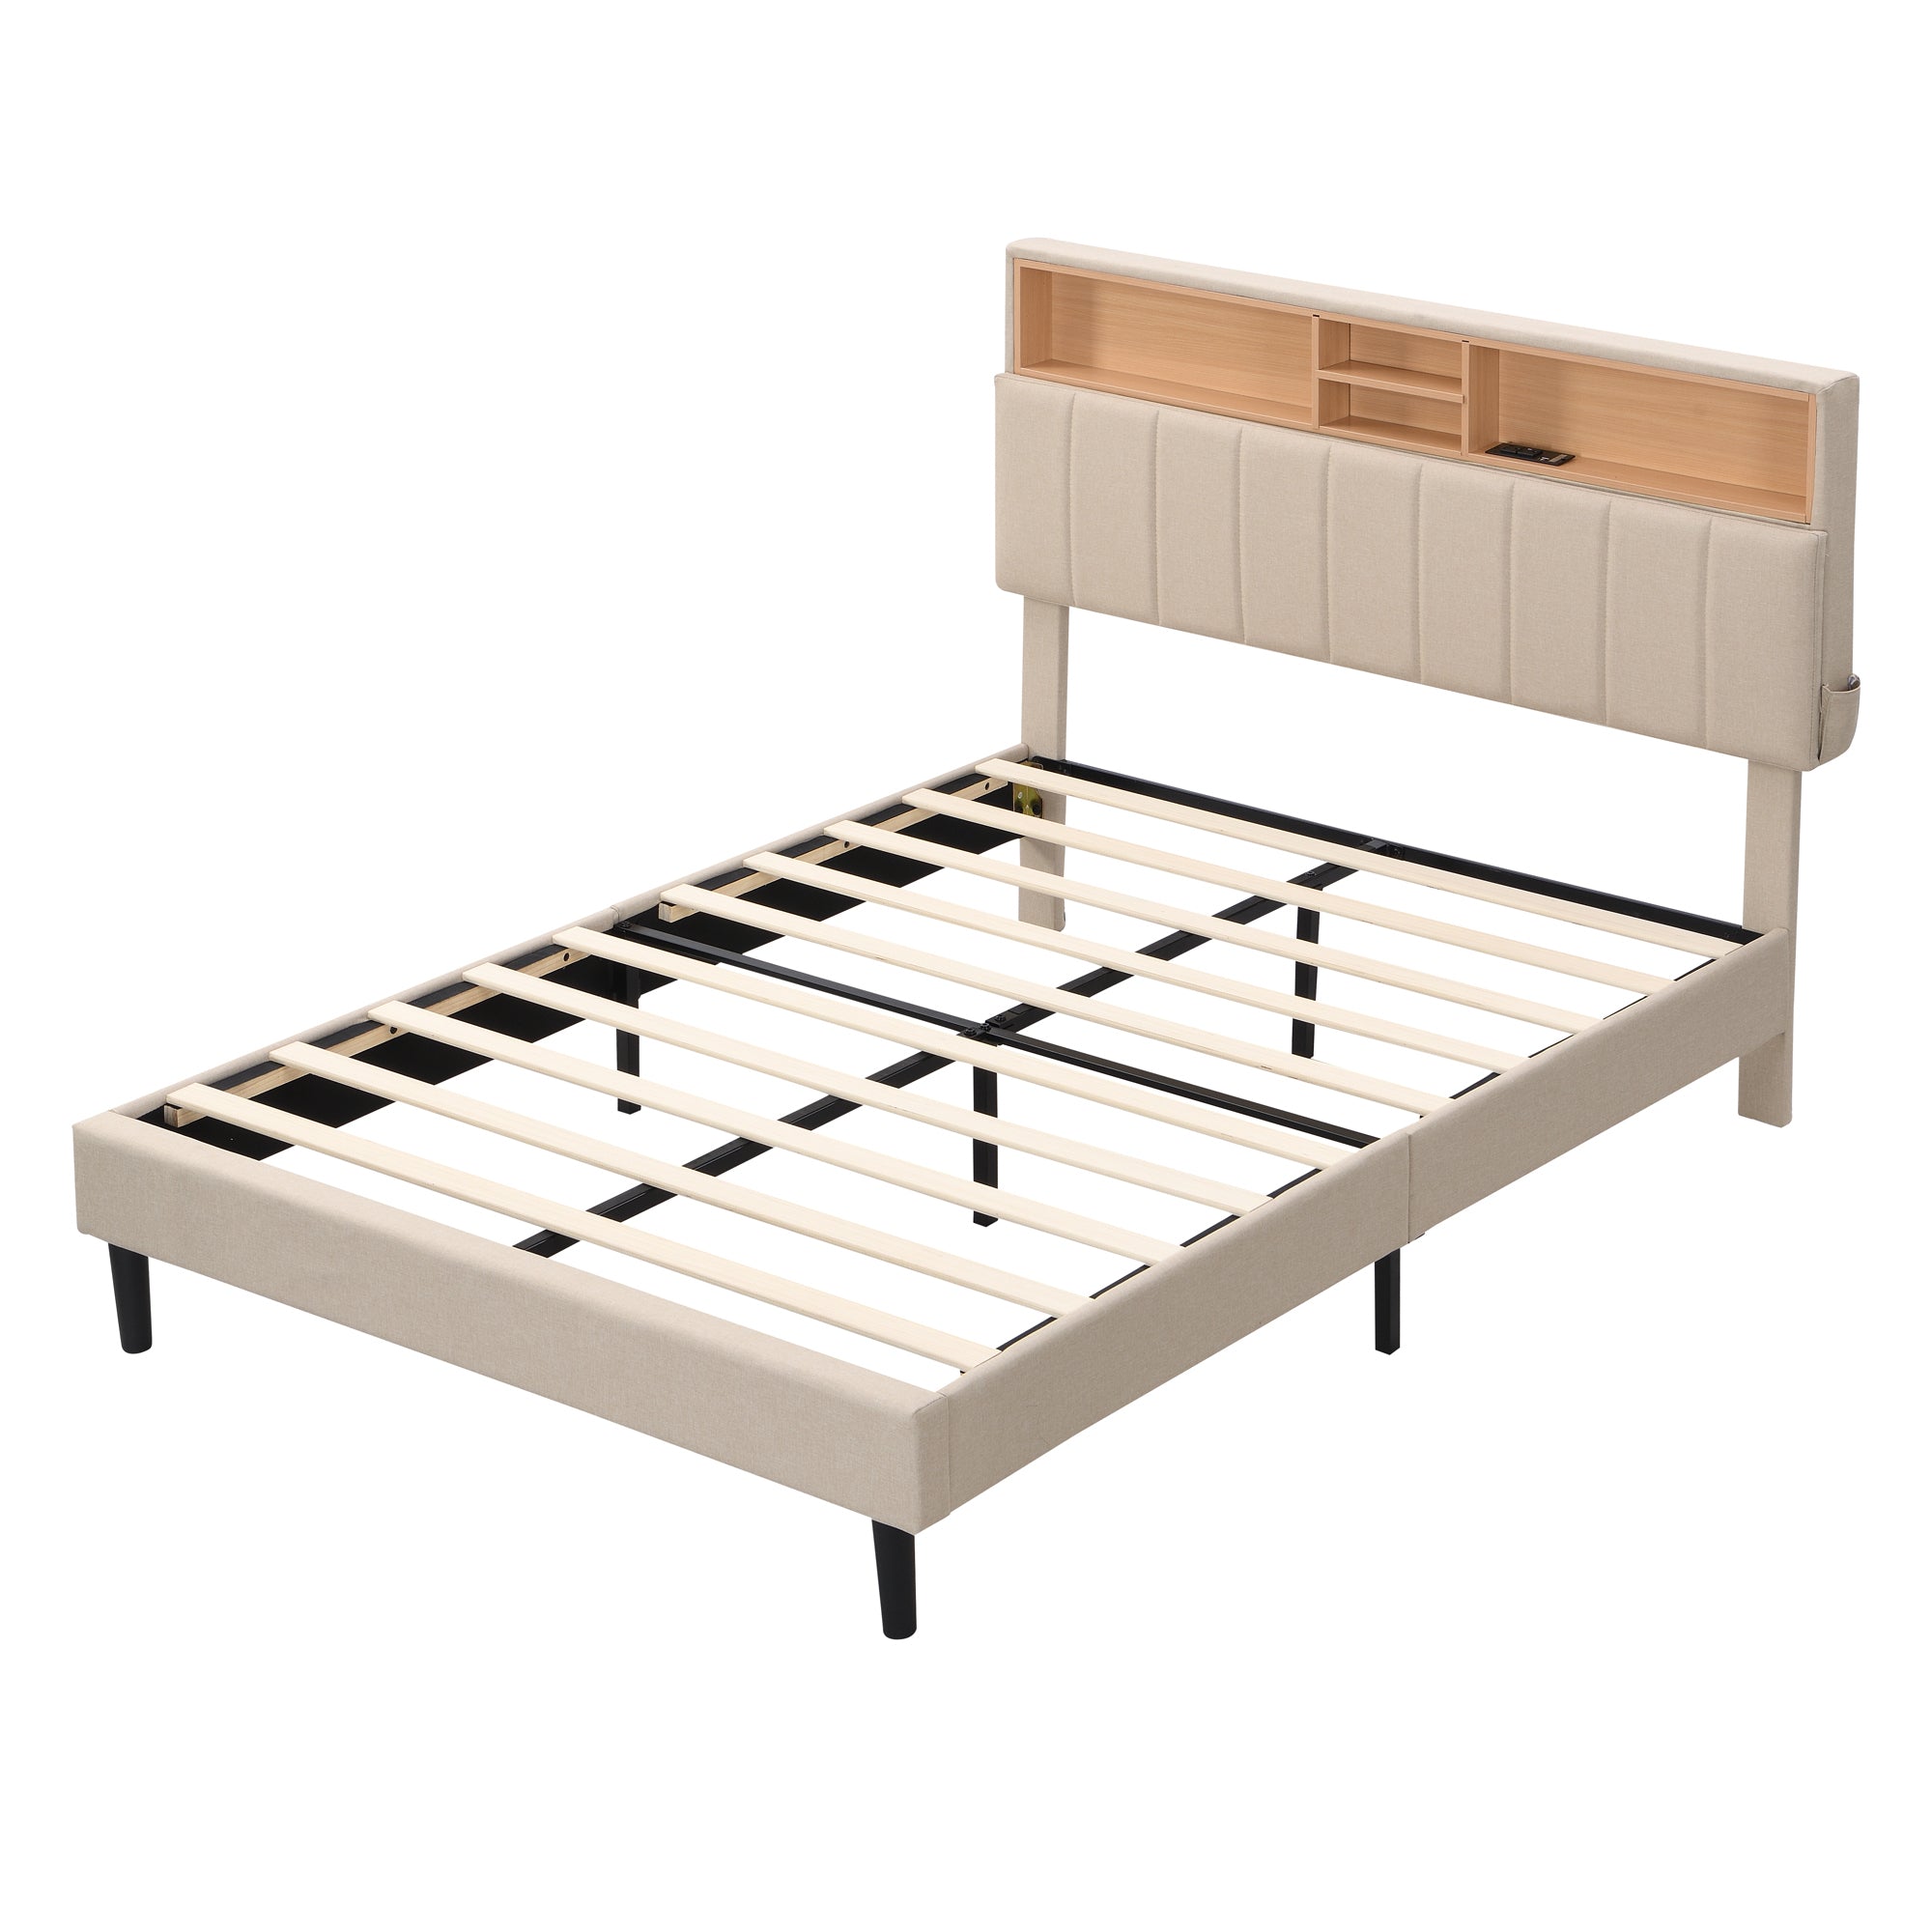 Full size Upholstered Platform Bed with Storage beige-linen